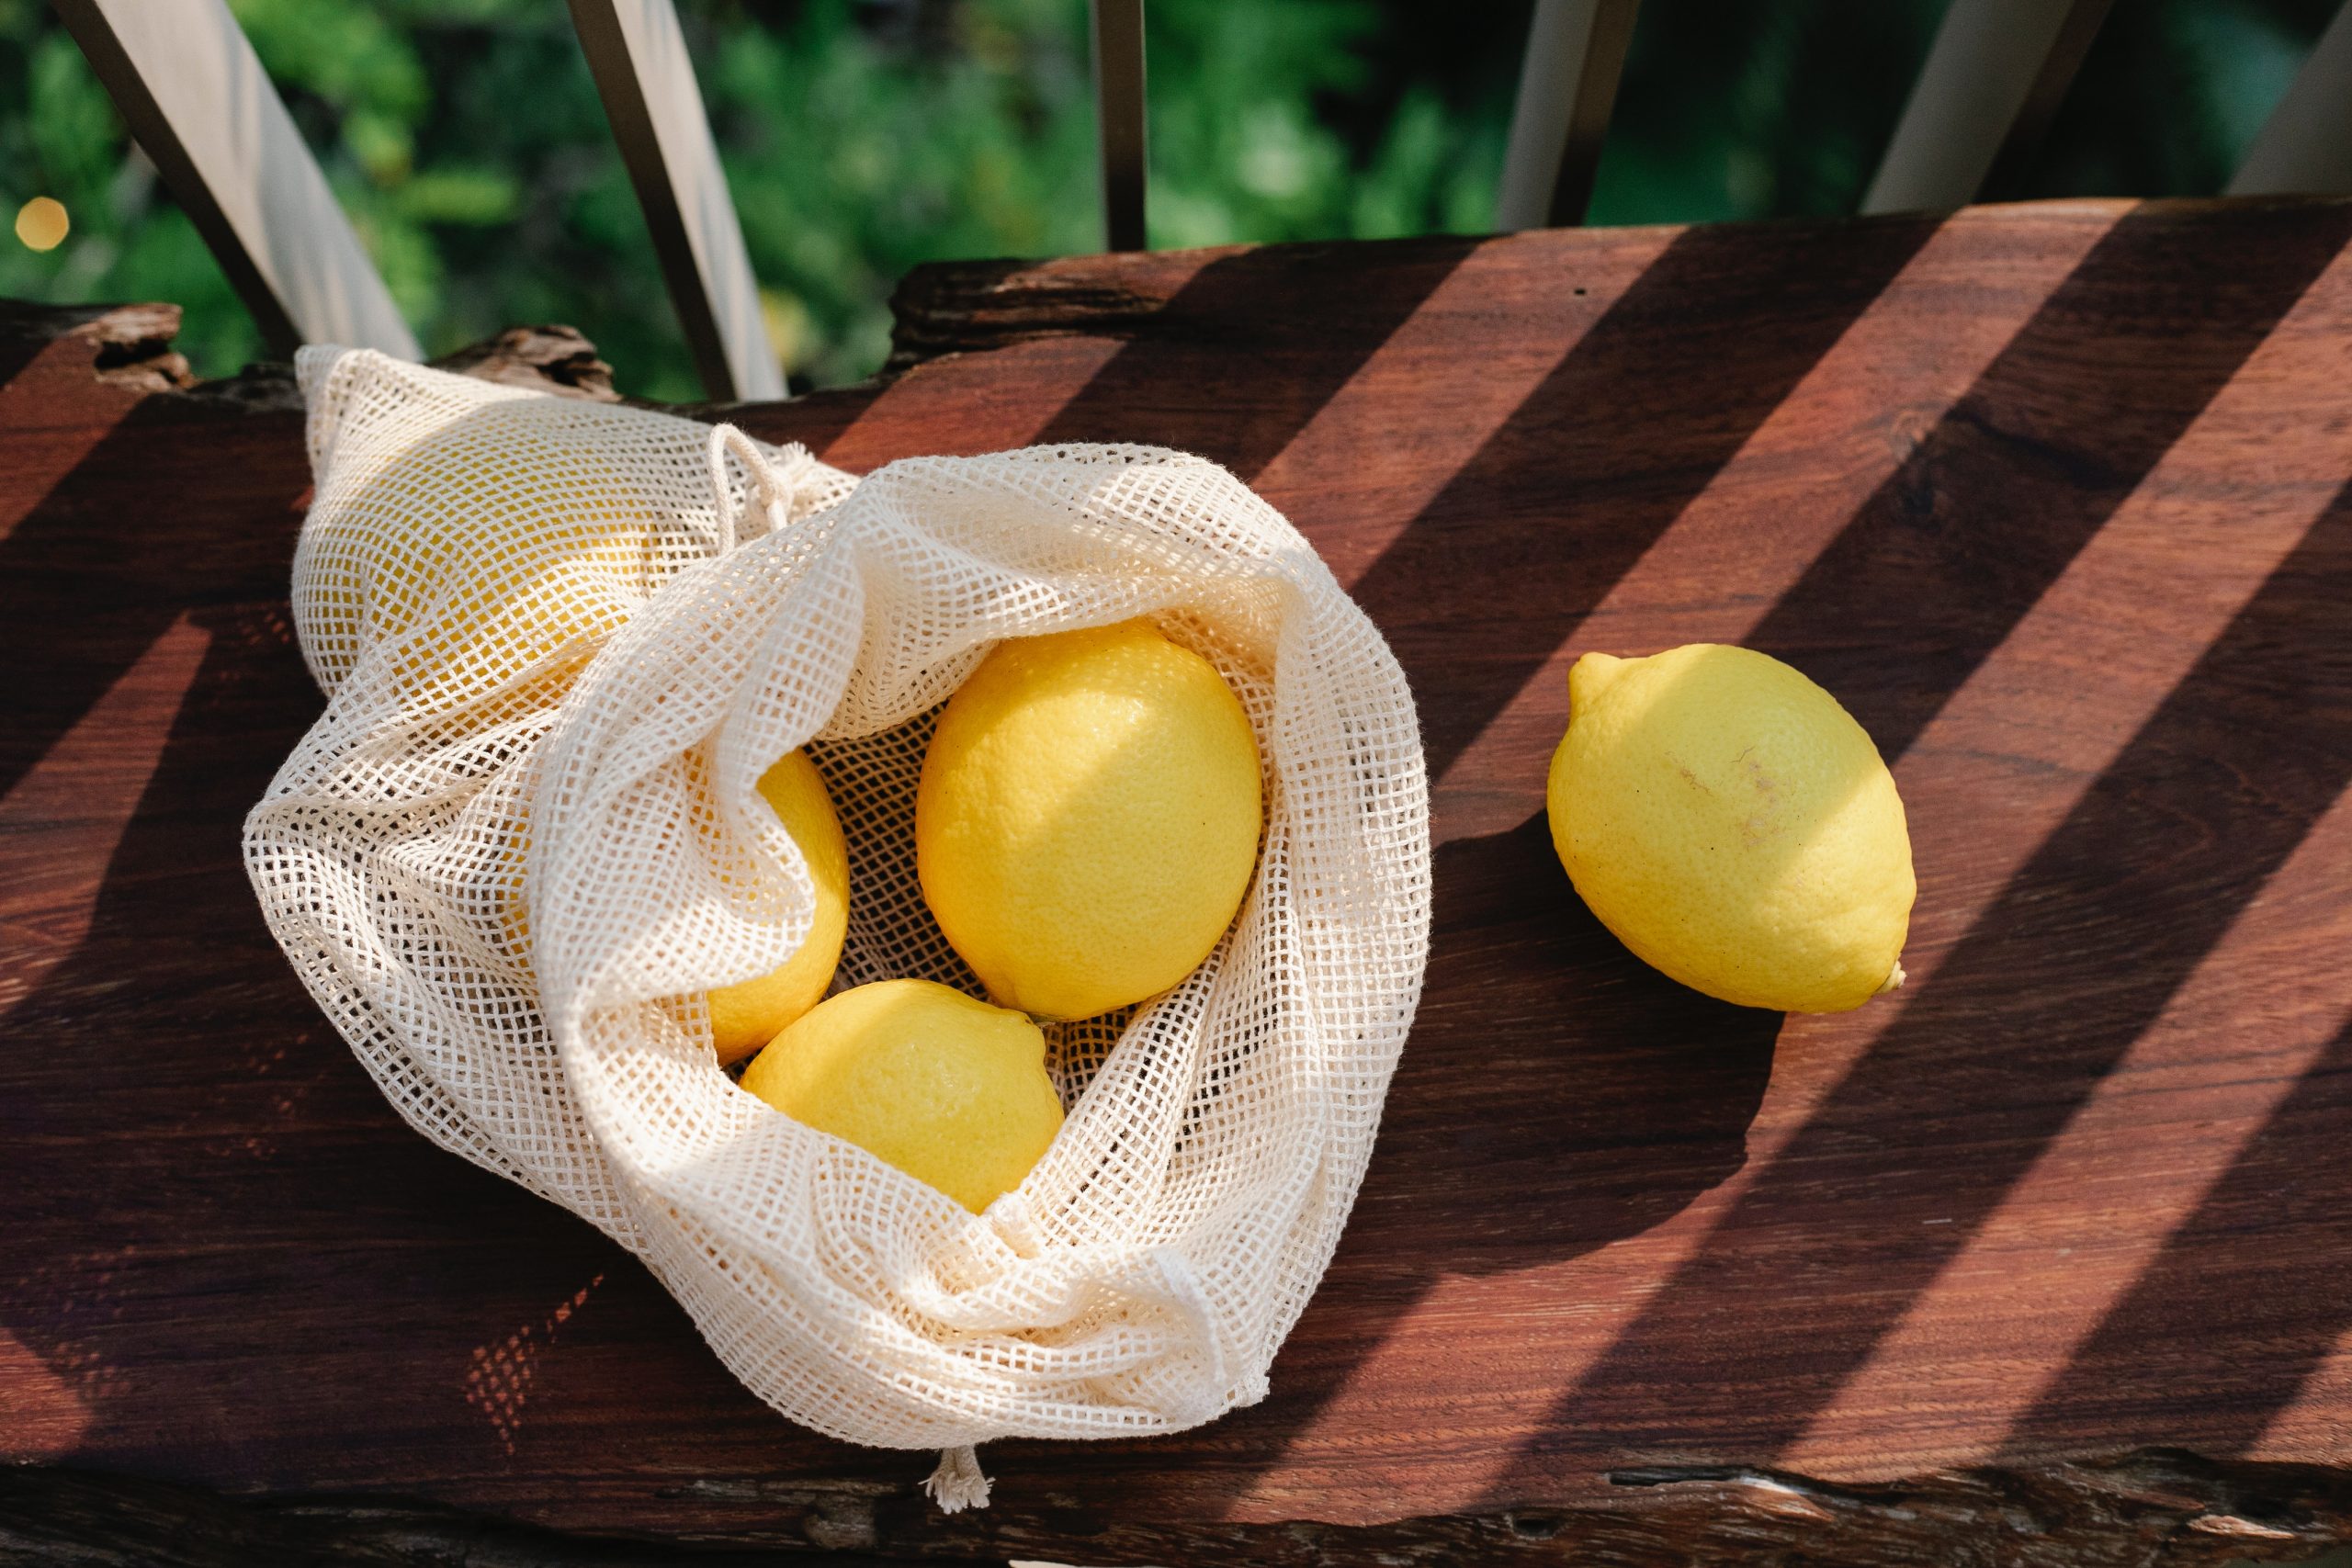 Lemon diet – what does it consist of?